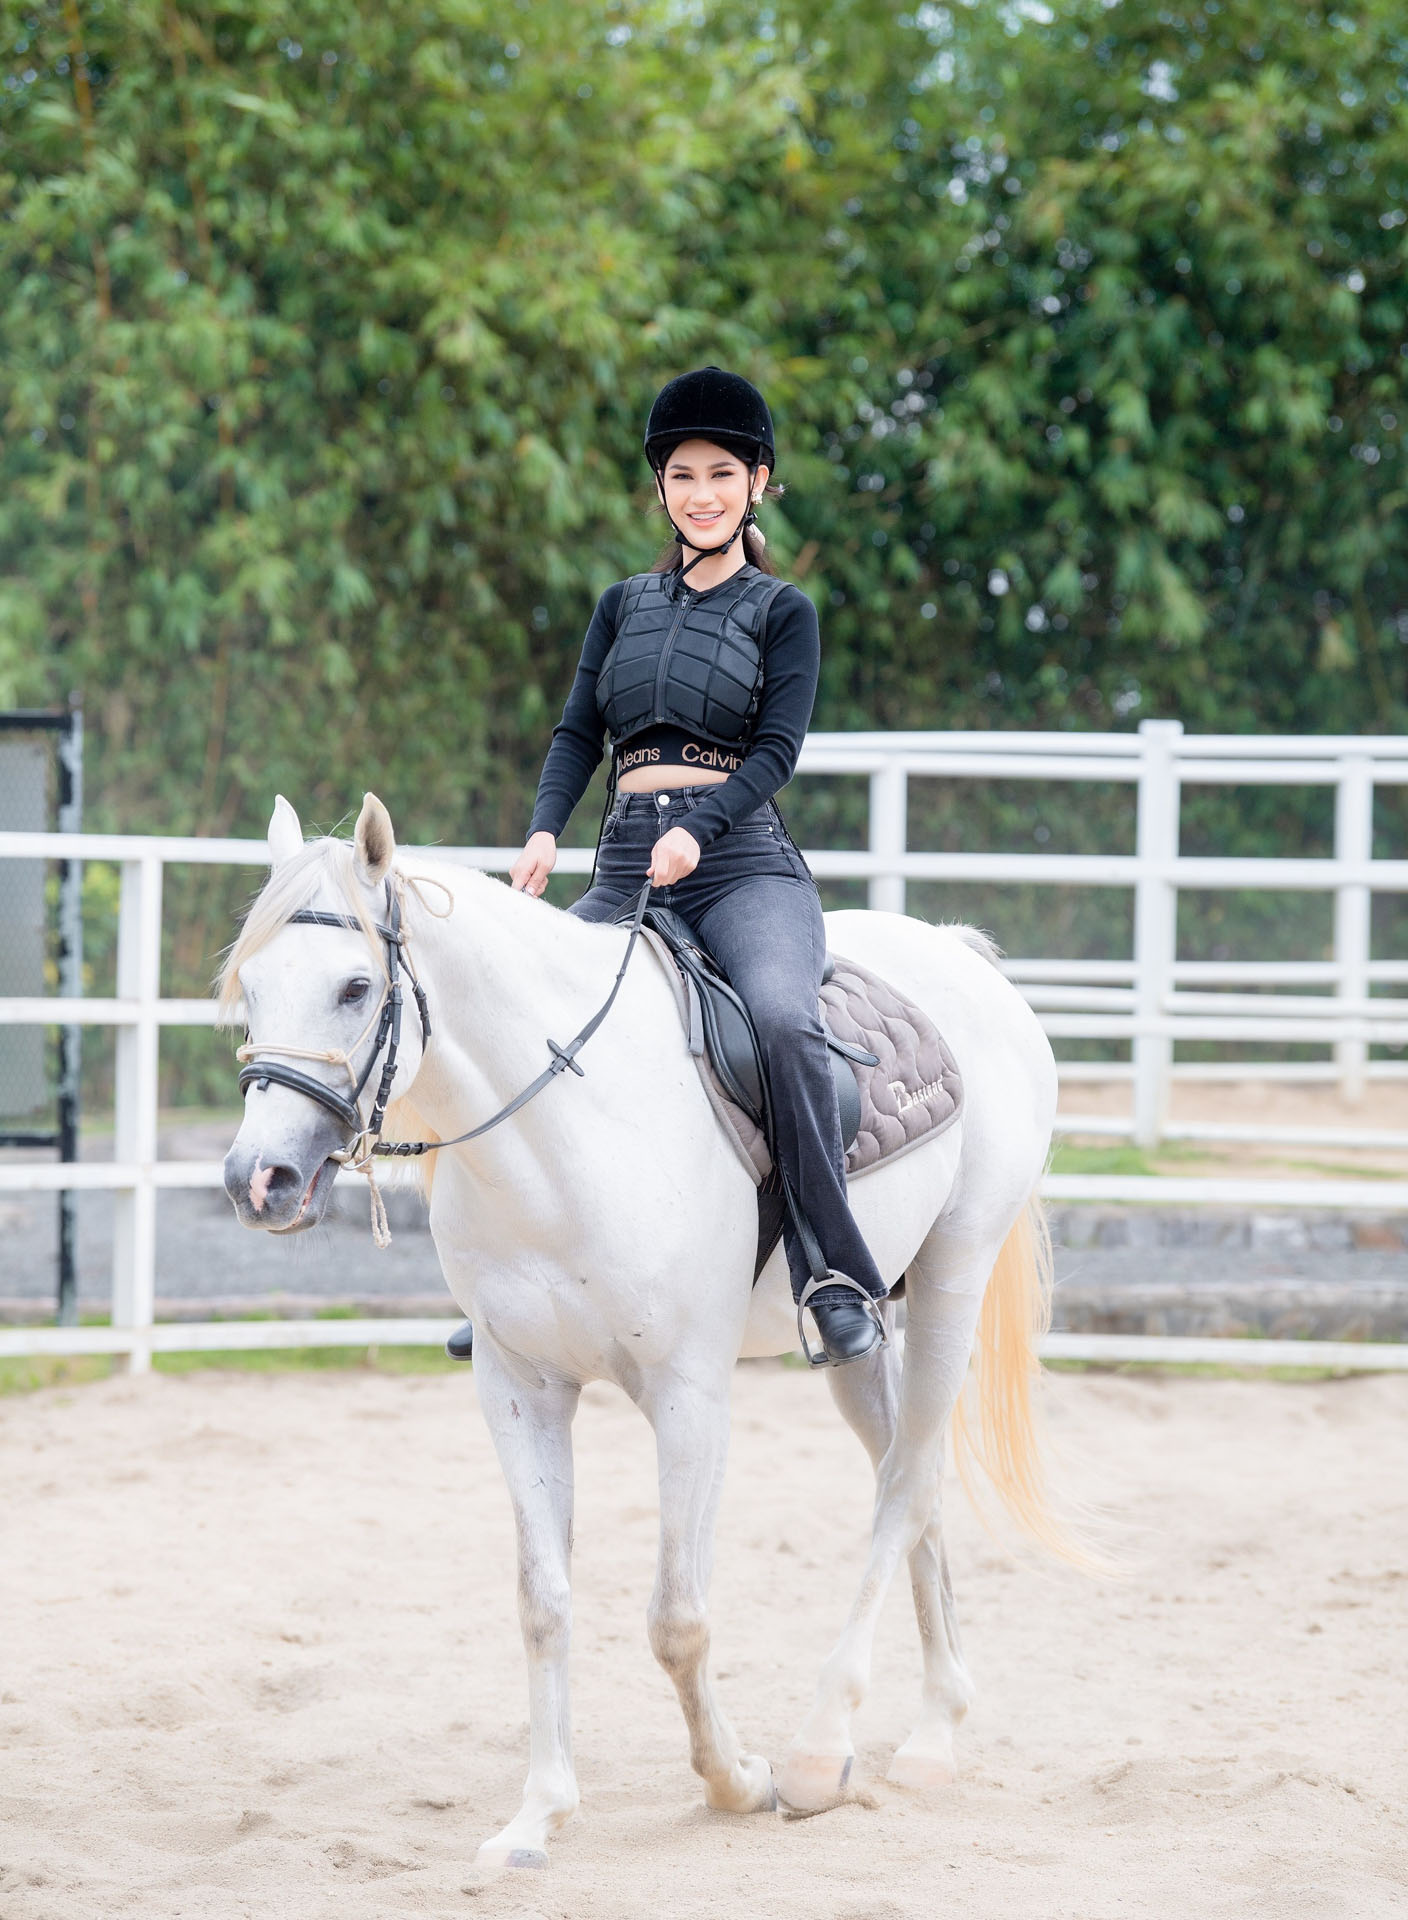 Các liệu pháp chữa lành Thân – Tâm – Trí qua các hoạt động cưỡi ngựa, bắn cung được du khách yêu thích trải nghiệm.